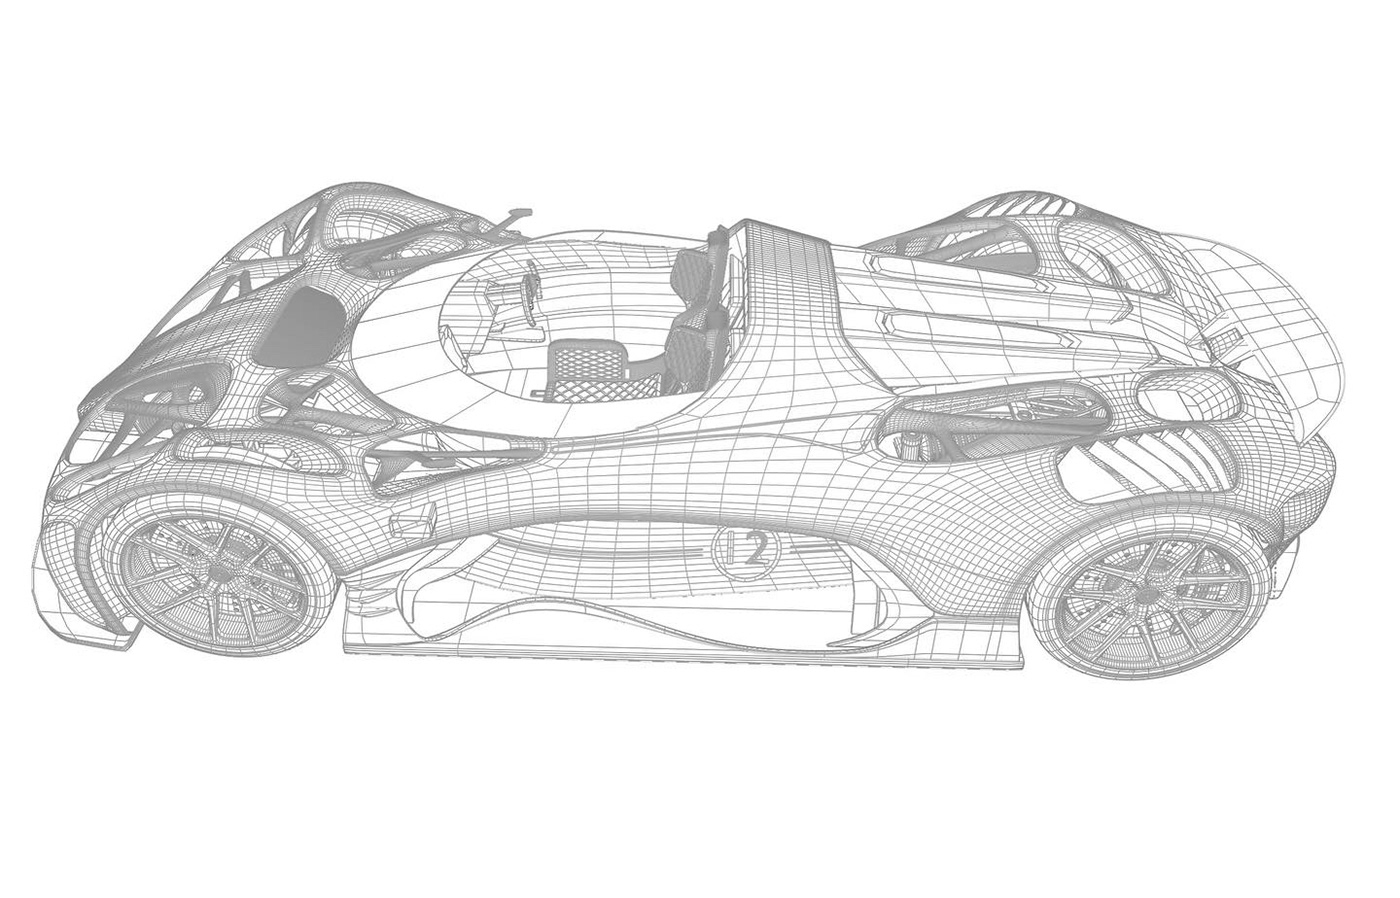 3D automobile automotive   automotive concept Automotive design blender car car design CGI concept design ILLUSTRATION  photoshop Render Super Car Transportation Design Vehicle